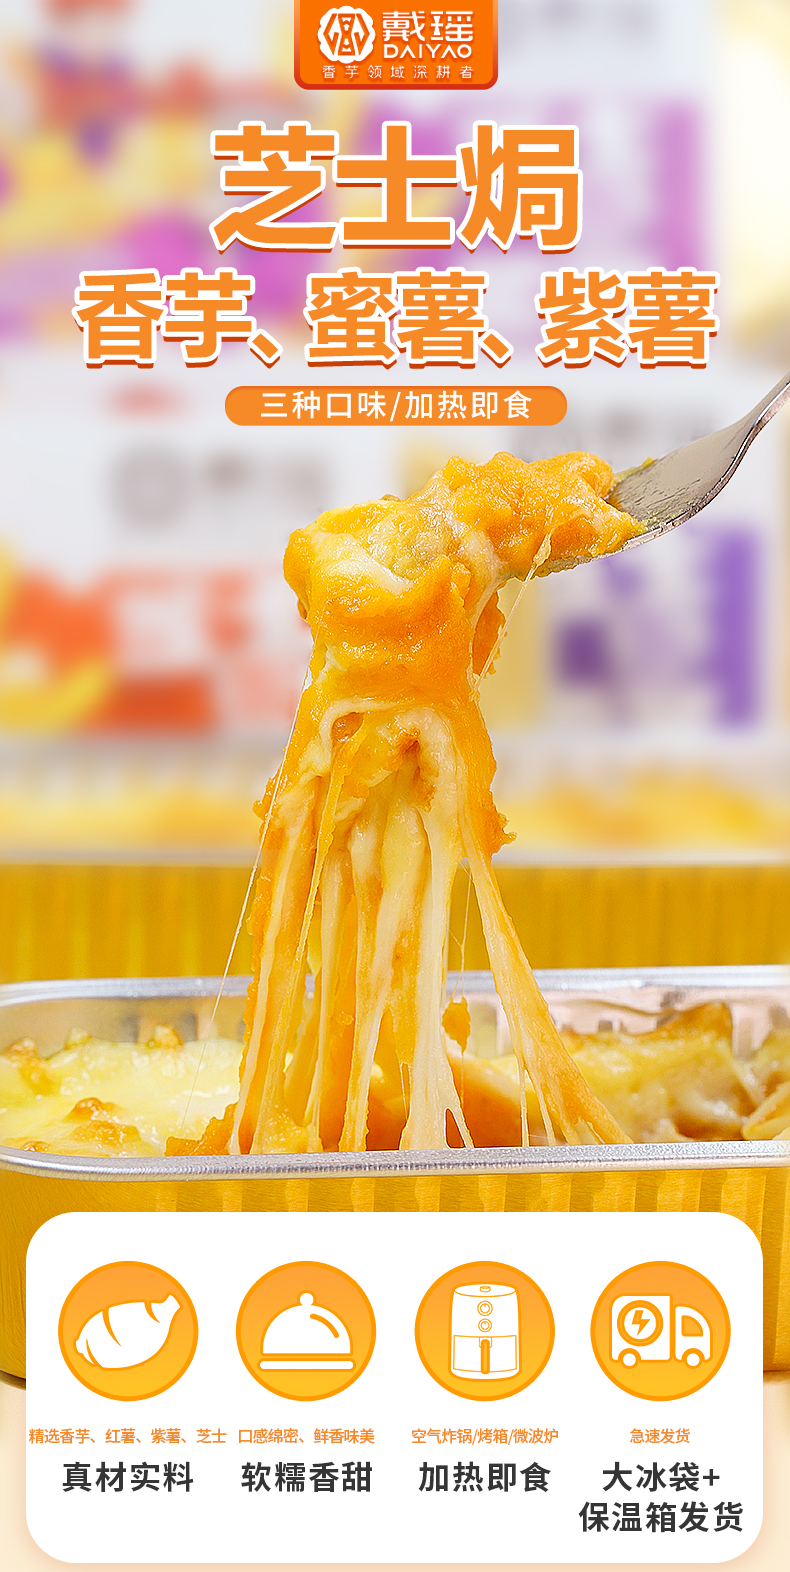 戴瑶芝士焗香芋/蜜薯/紫薯